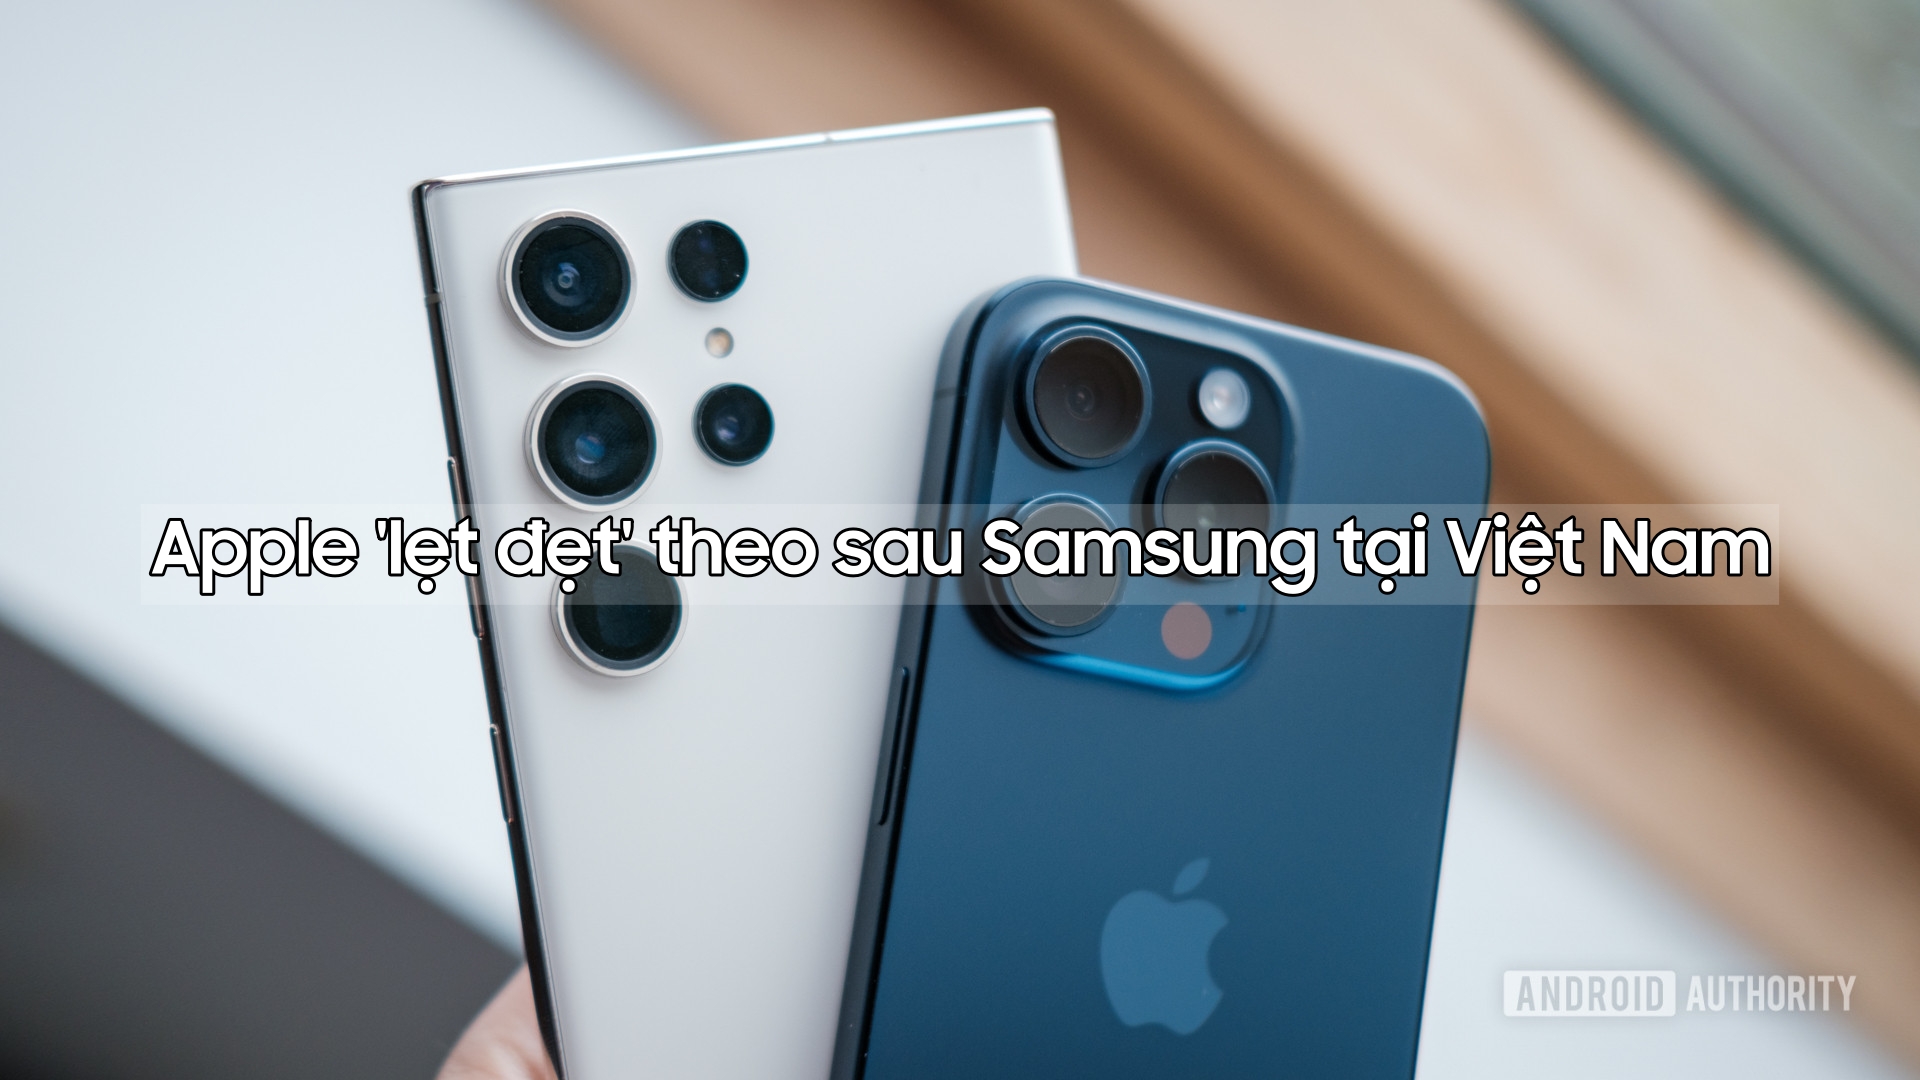 Tại Việt Nam, Samsung dẫn đầu thị trường, Apple vị trí gần \'bét bảng\'